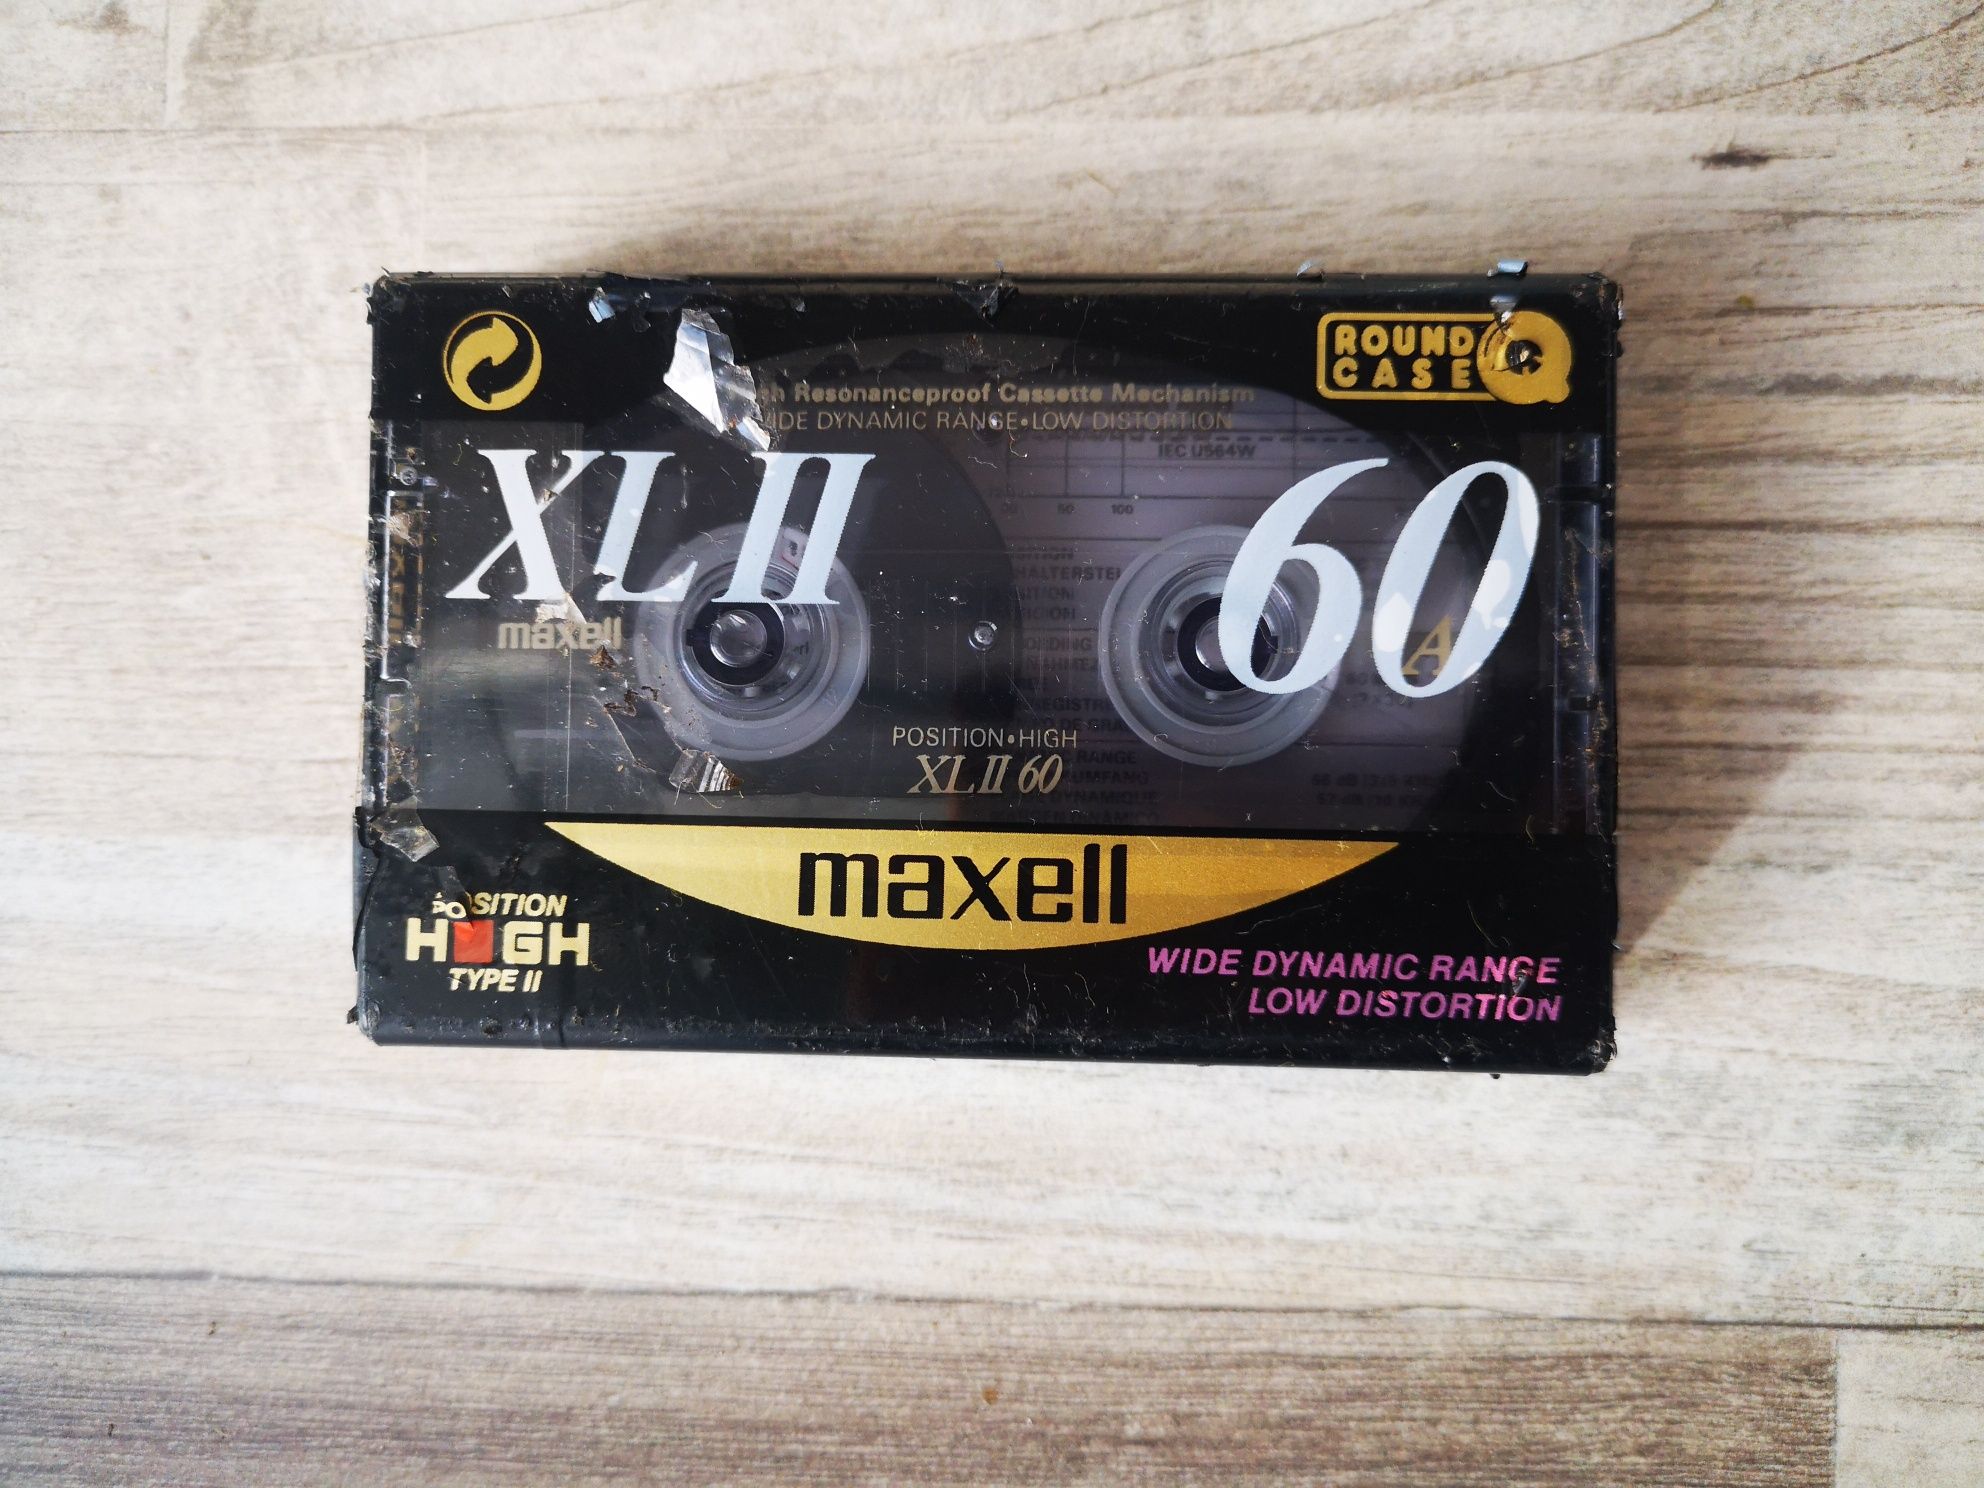 Kaseta Maxell Xl II 60 Made in England